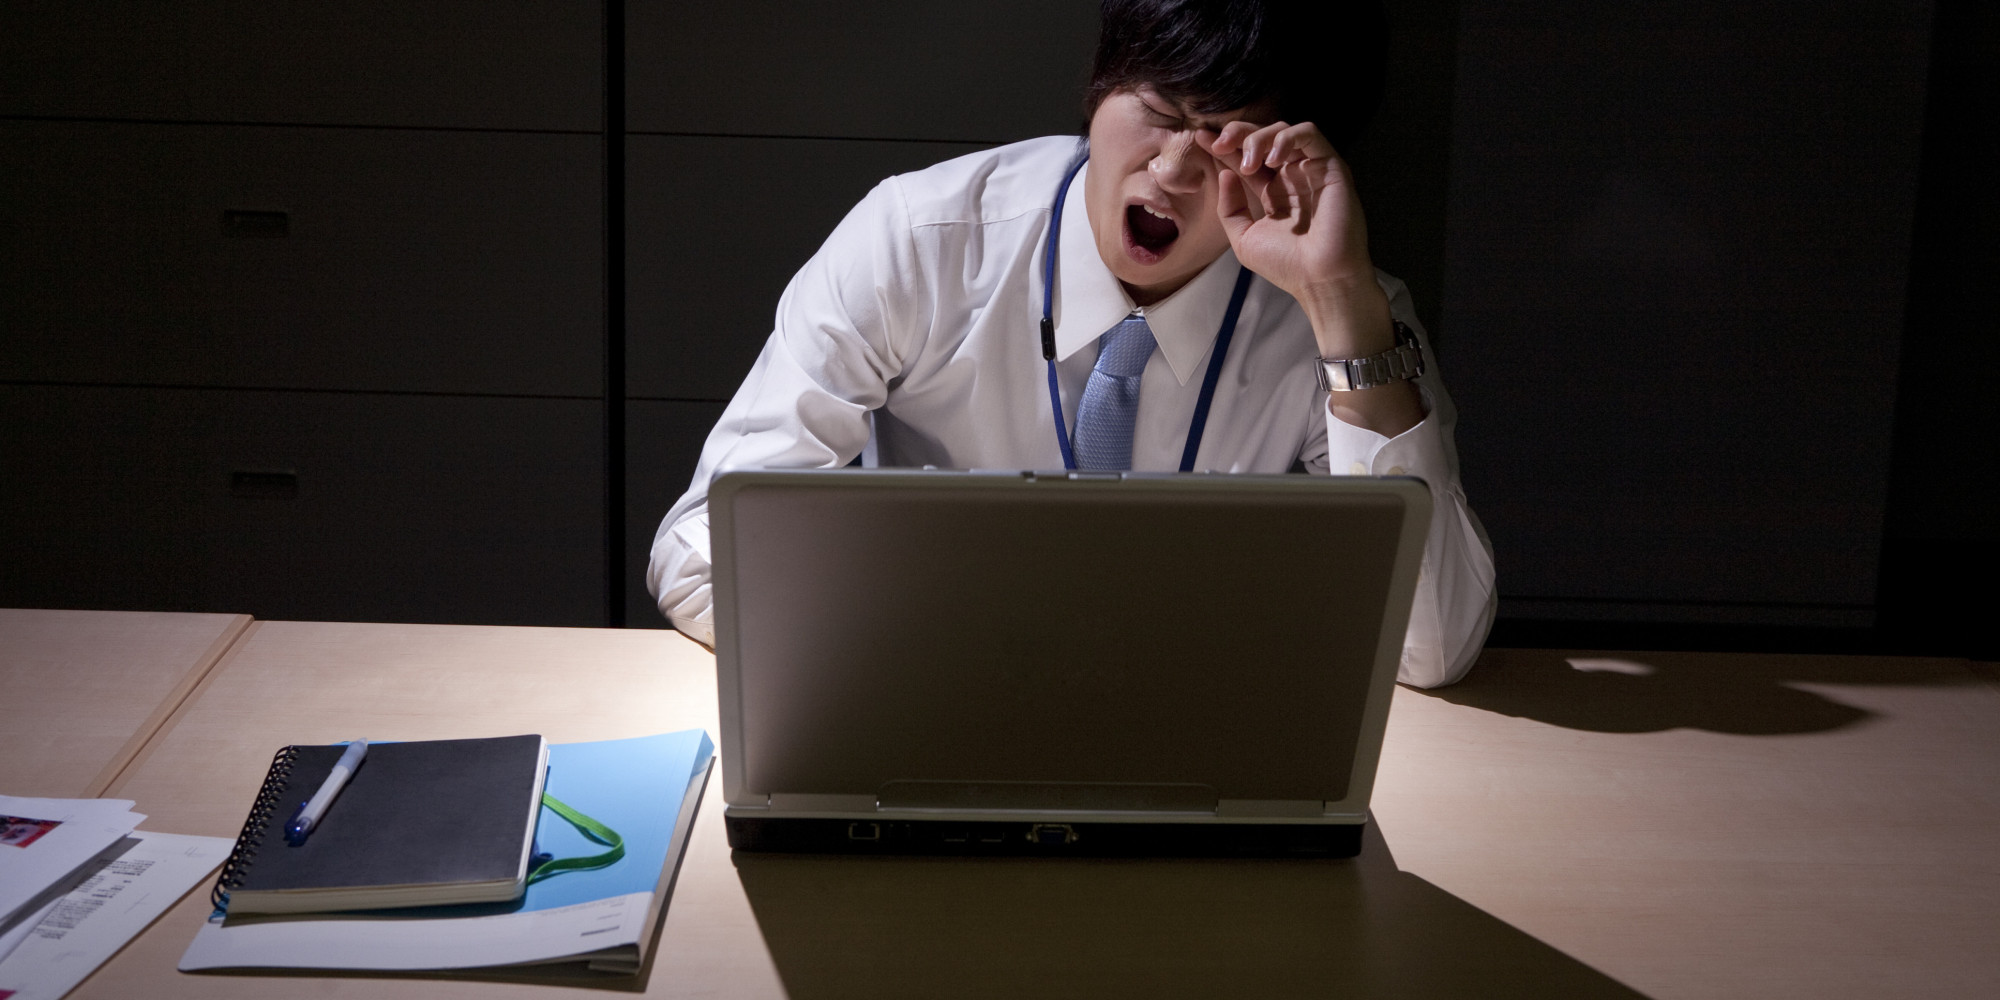 Στην Ιαπωνία εργάζονται τόσες πολλές ώρες που τους παίρνει ο ύπνος στο δρόμο του γυρισμού!